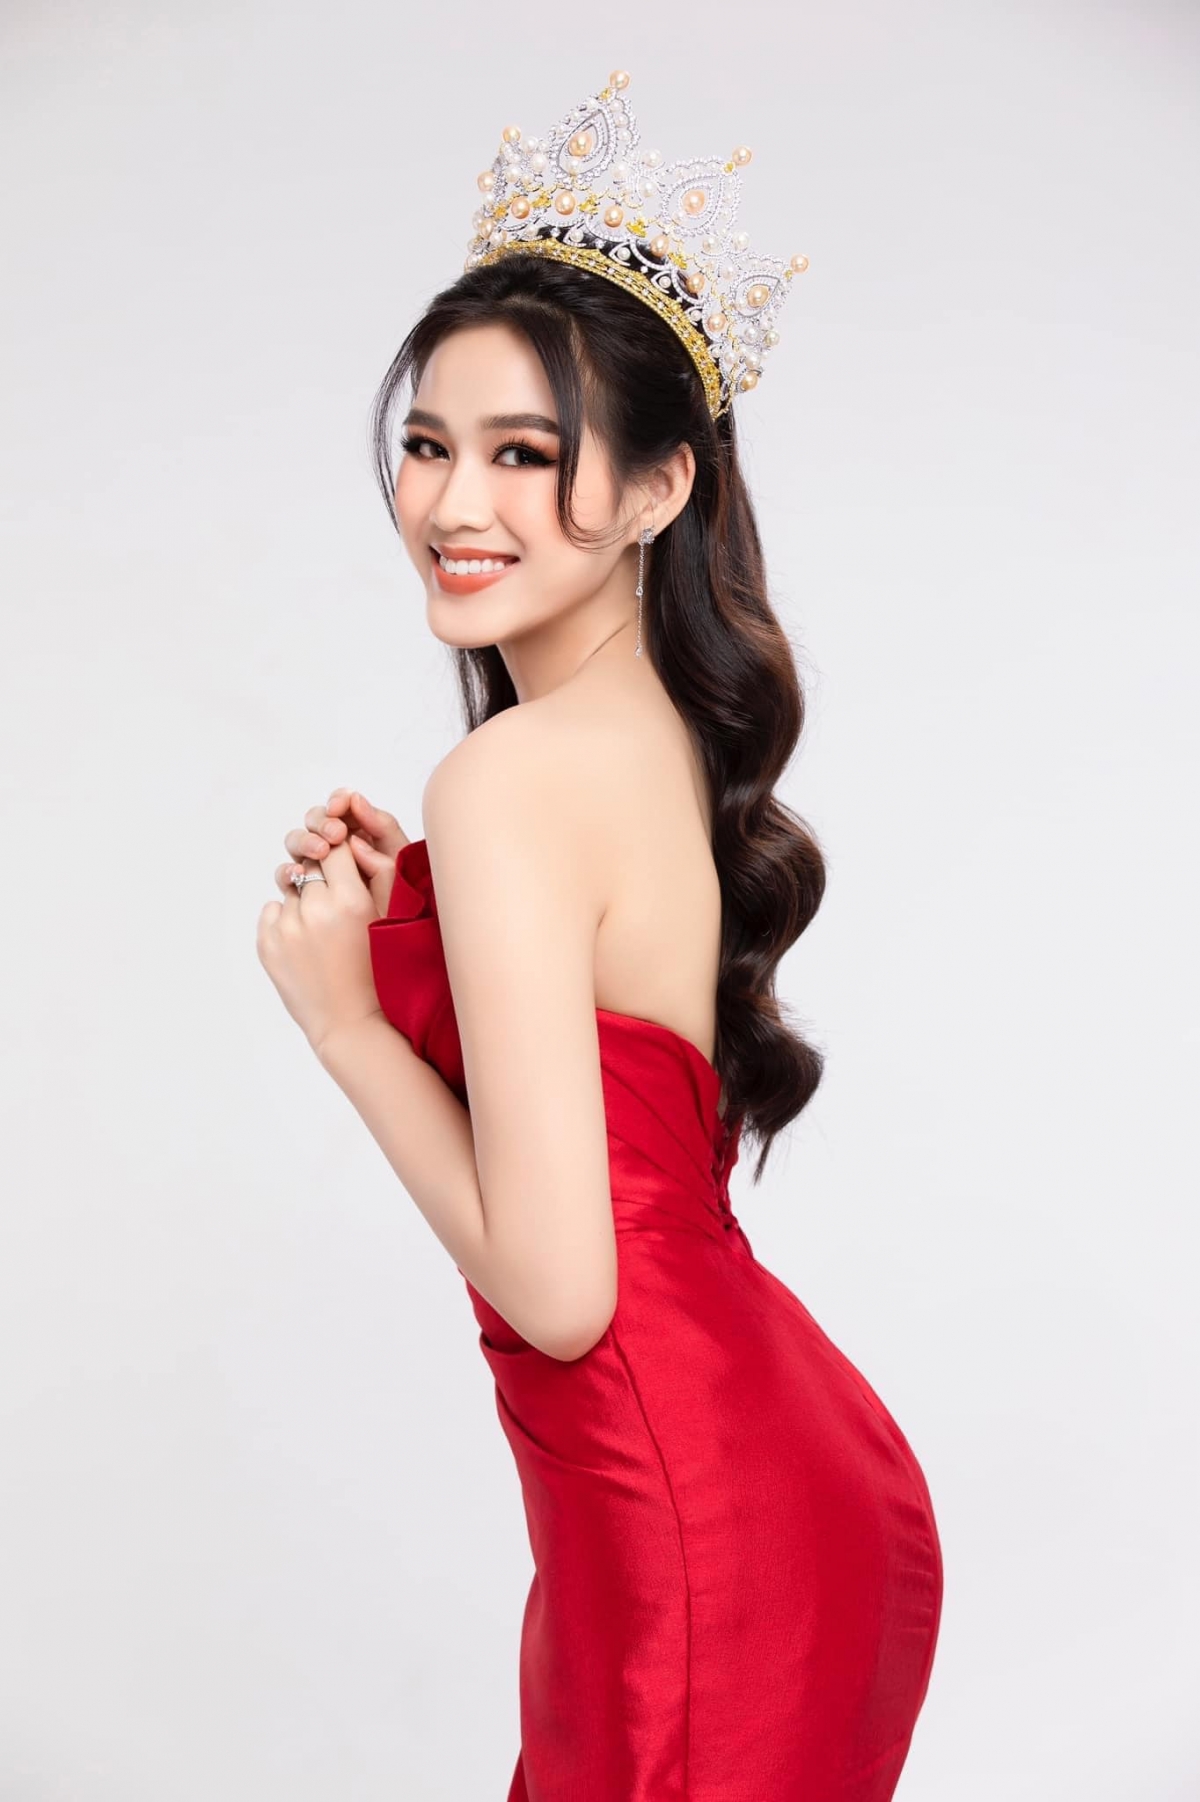 Hoa hậu Đỗ Thị Hà là 1 trong những đối thủ nặng ký của Tamara